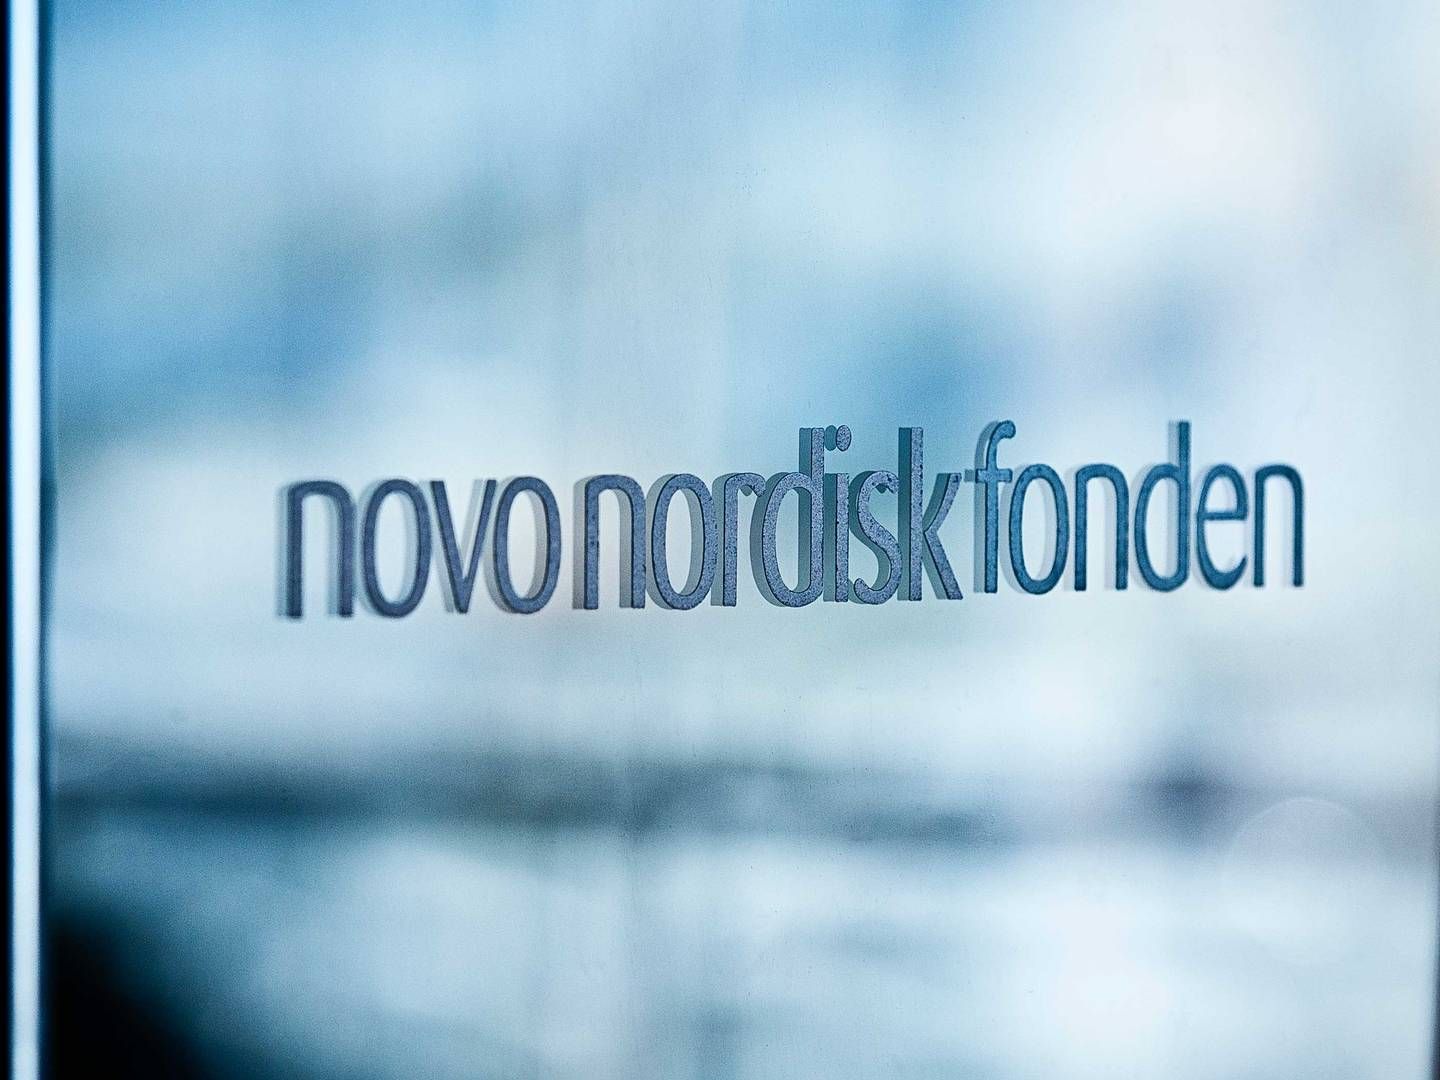 Forskere er bange for at miste støtten til deres forskning, hvis de udtaler sig kritisk om Novo Nordisk Fonden, skriver Frihedsbrevet. | Photo: Novo Nordisk Fonden / Pr